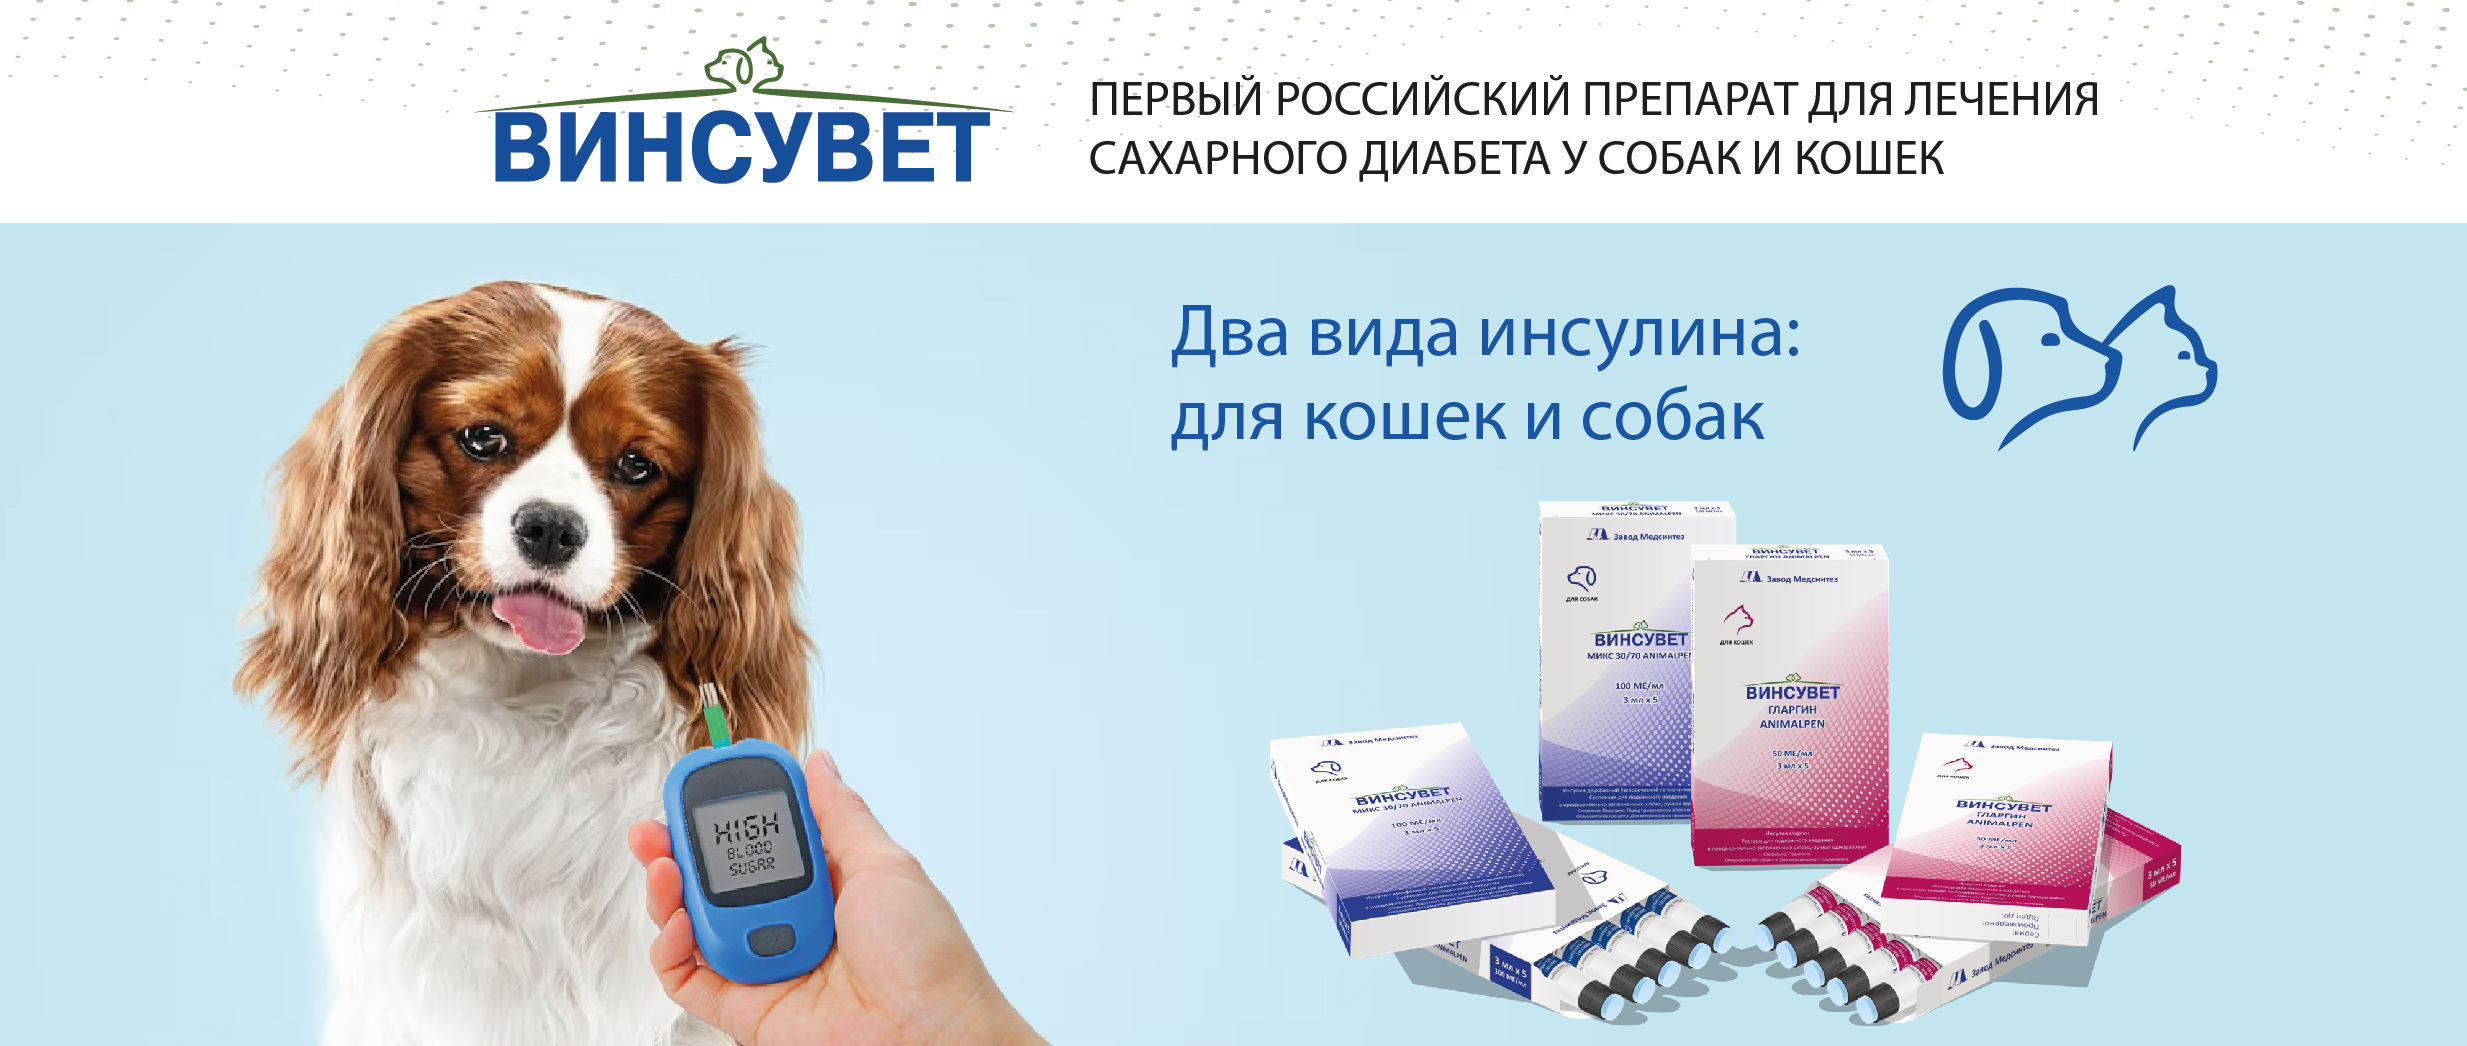 Первый российский препарат для лечения сахарного диабета у собак и кошек